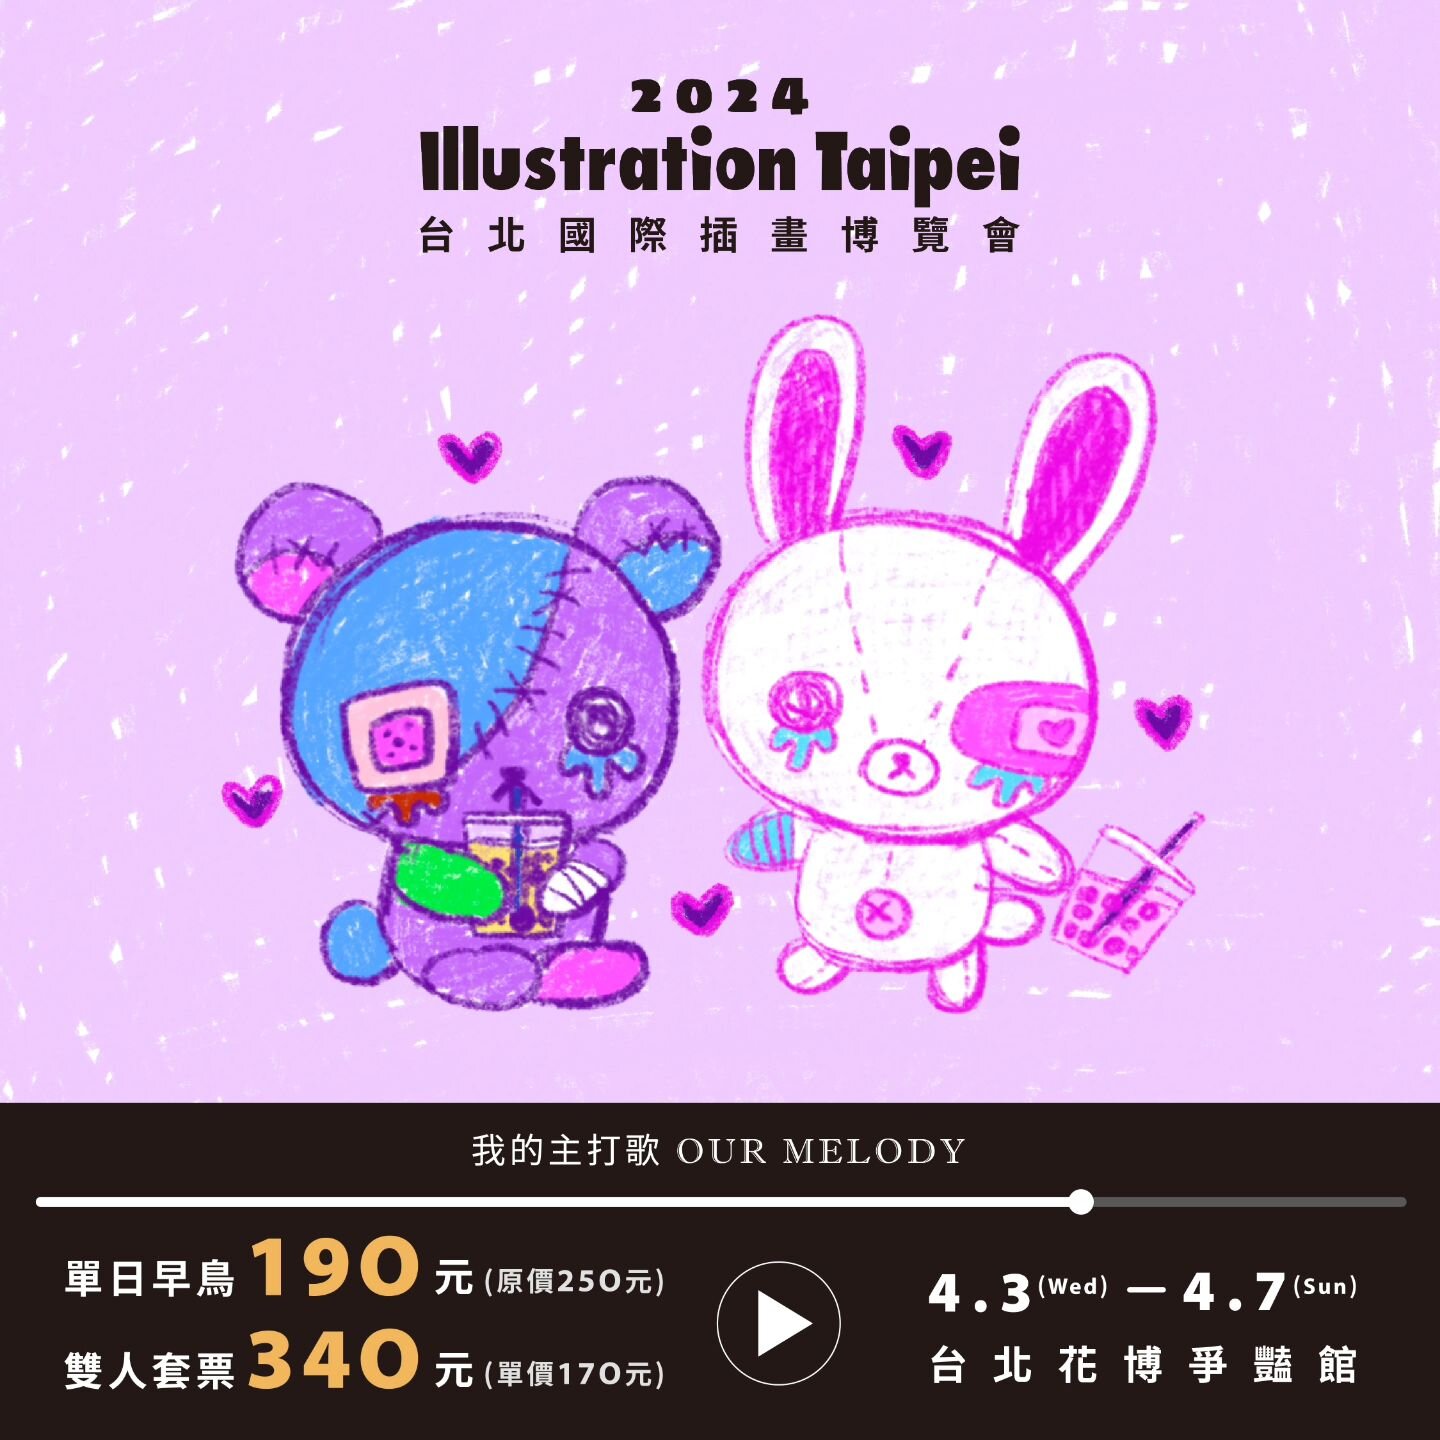 ♪ 𝗜𝗟𝗟𝗨𝗦𝗧𝗥𝗔𝗧𝗜𝗢𝗡 𝗧𝗔𝗜𝗣𝗘𝗜 台北國際插畫博覽會 ♫
Hello Taipei ~ I'll be @illustration_taipei this month from 4/3-4/7 !! 
I'm super excited to show my designs in taiwan and meet all the cool artists there!
Please come check it 💕💕💕 

⌑ 展出日期：

202